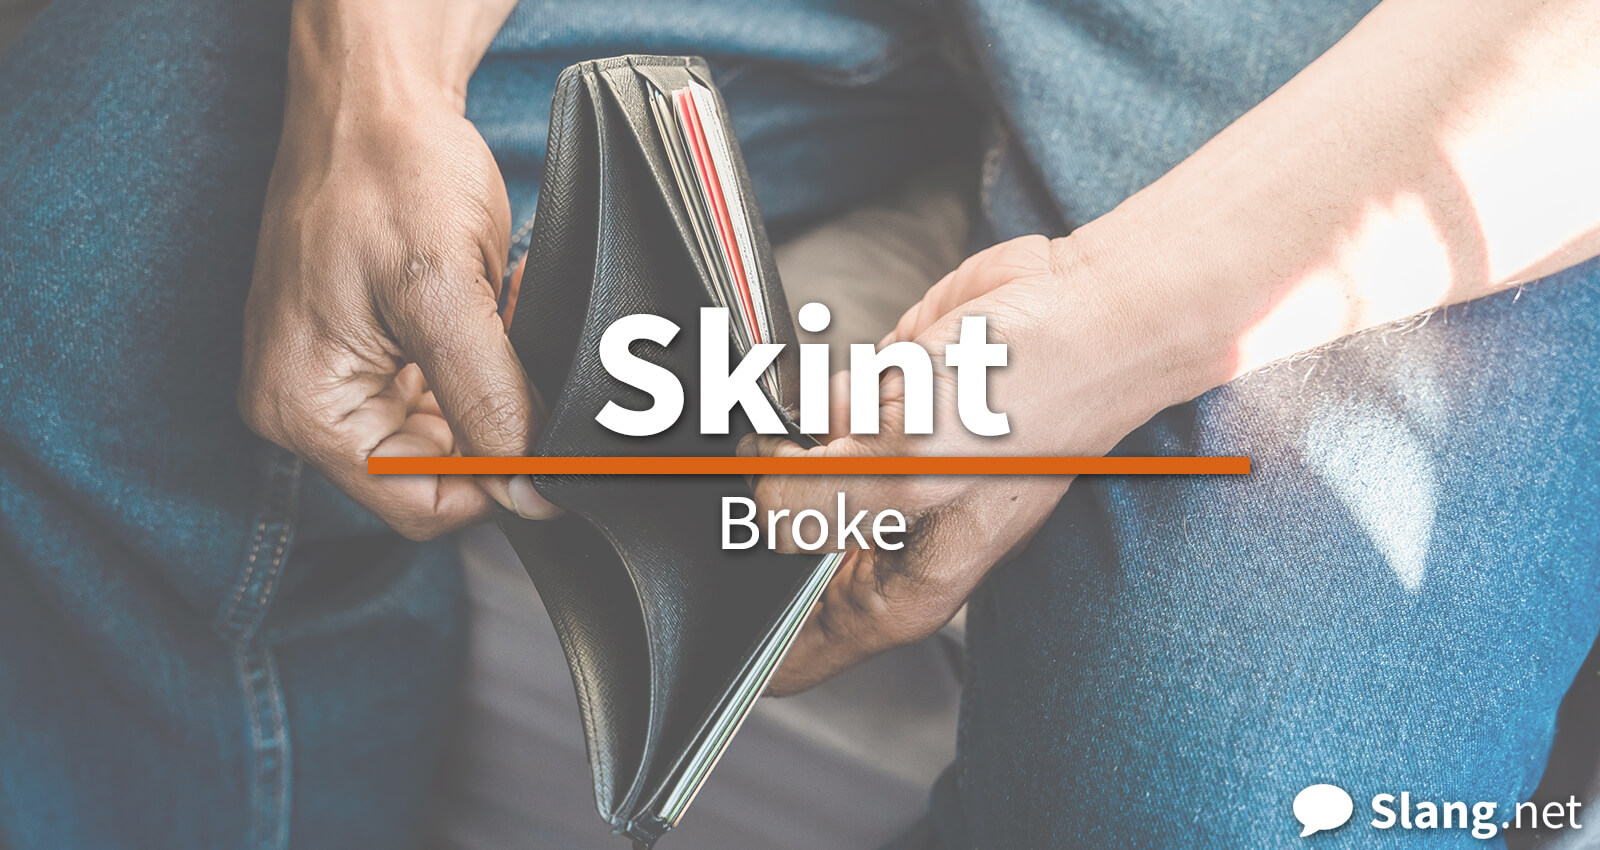 Skint means broke